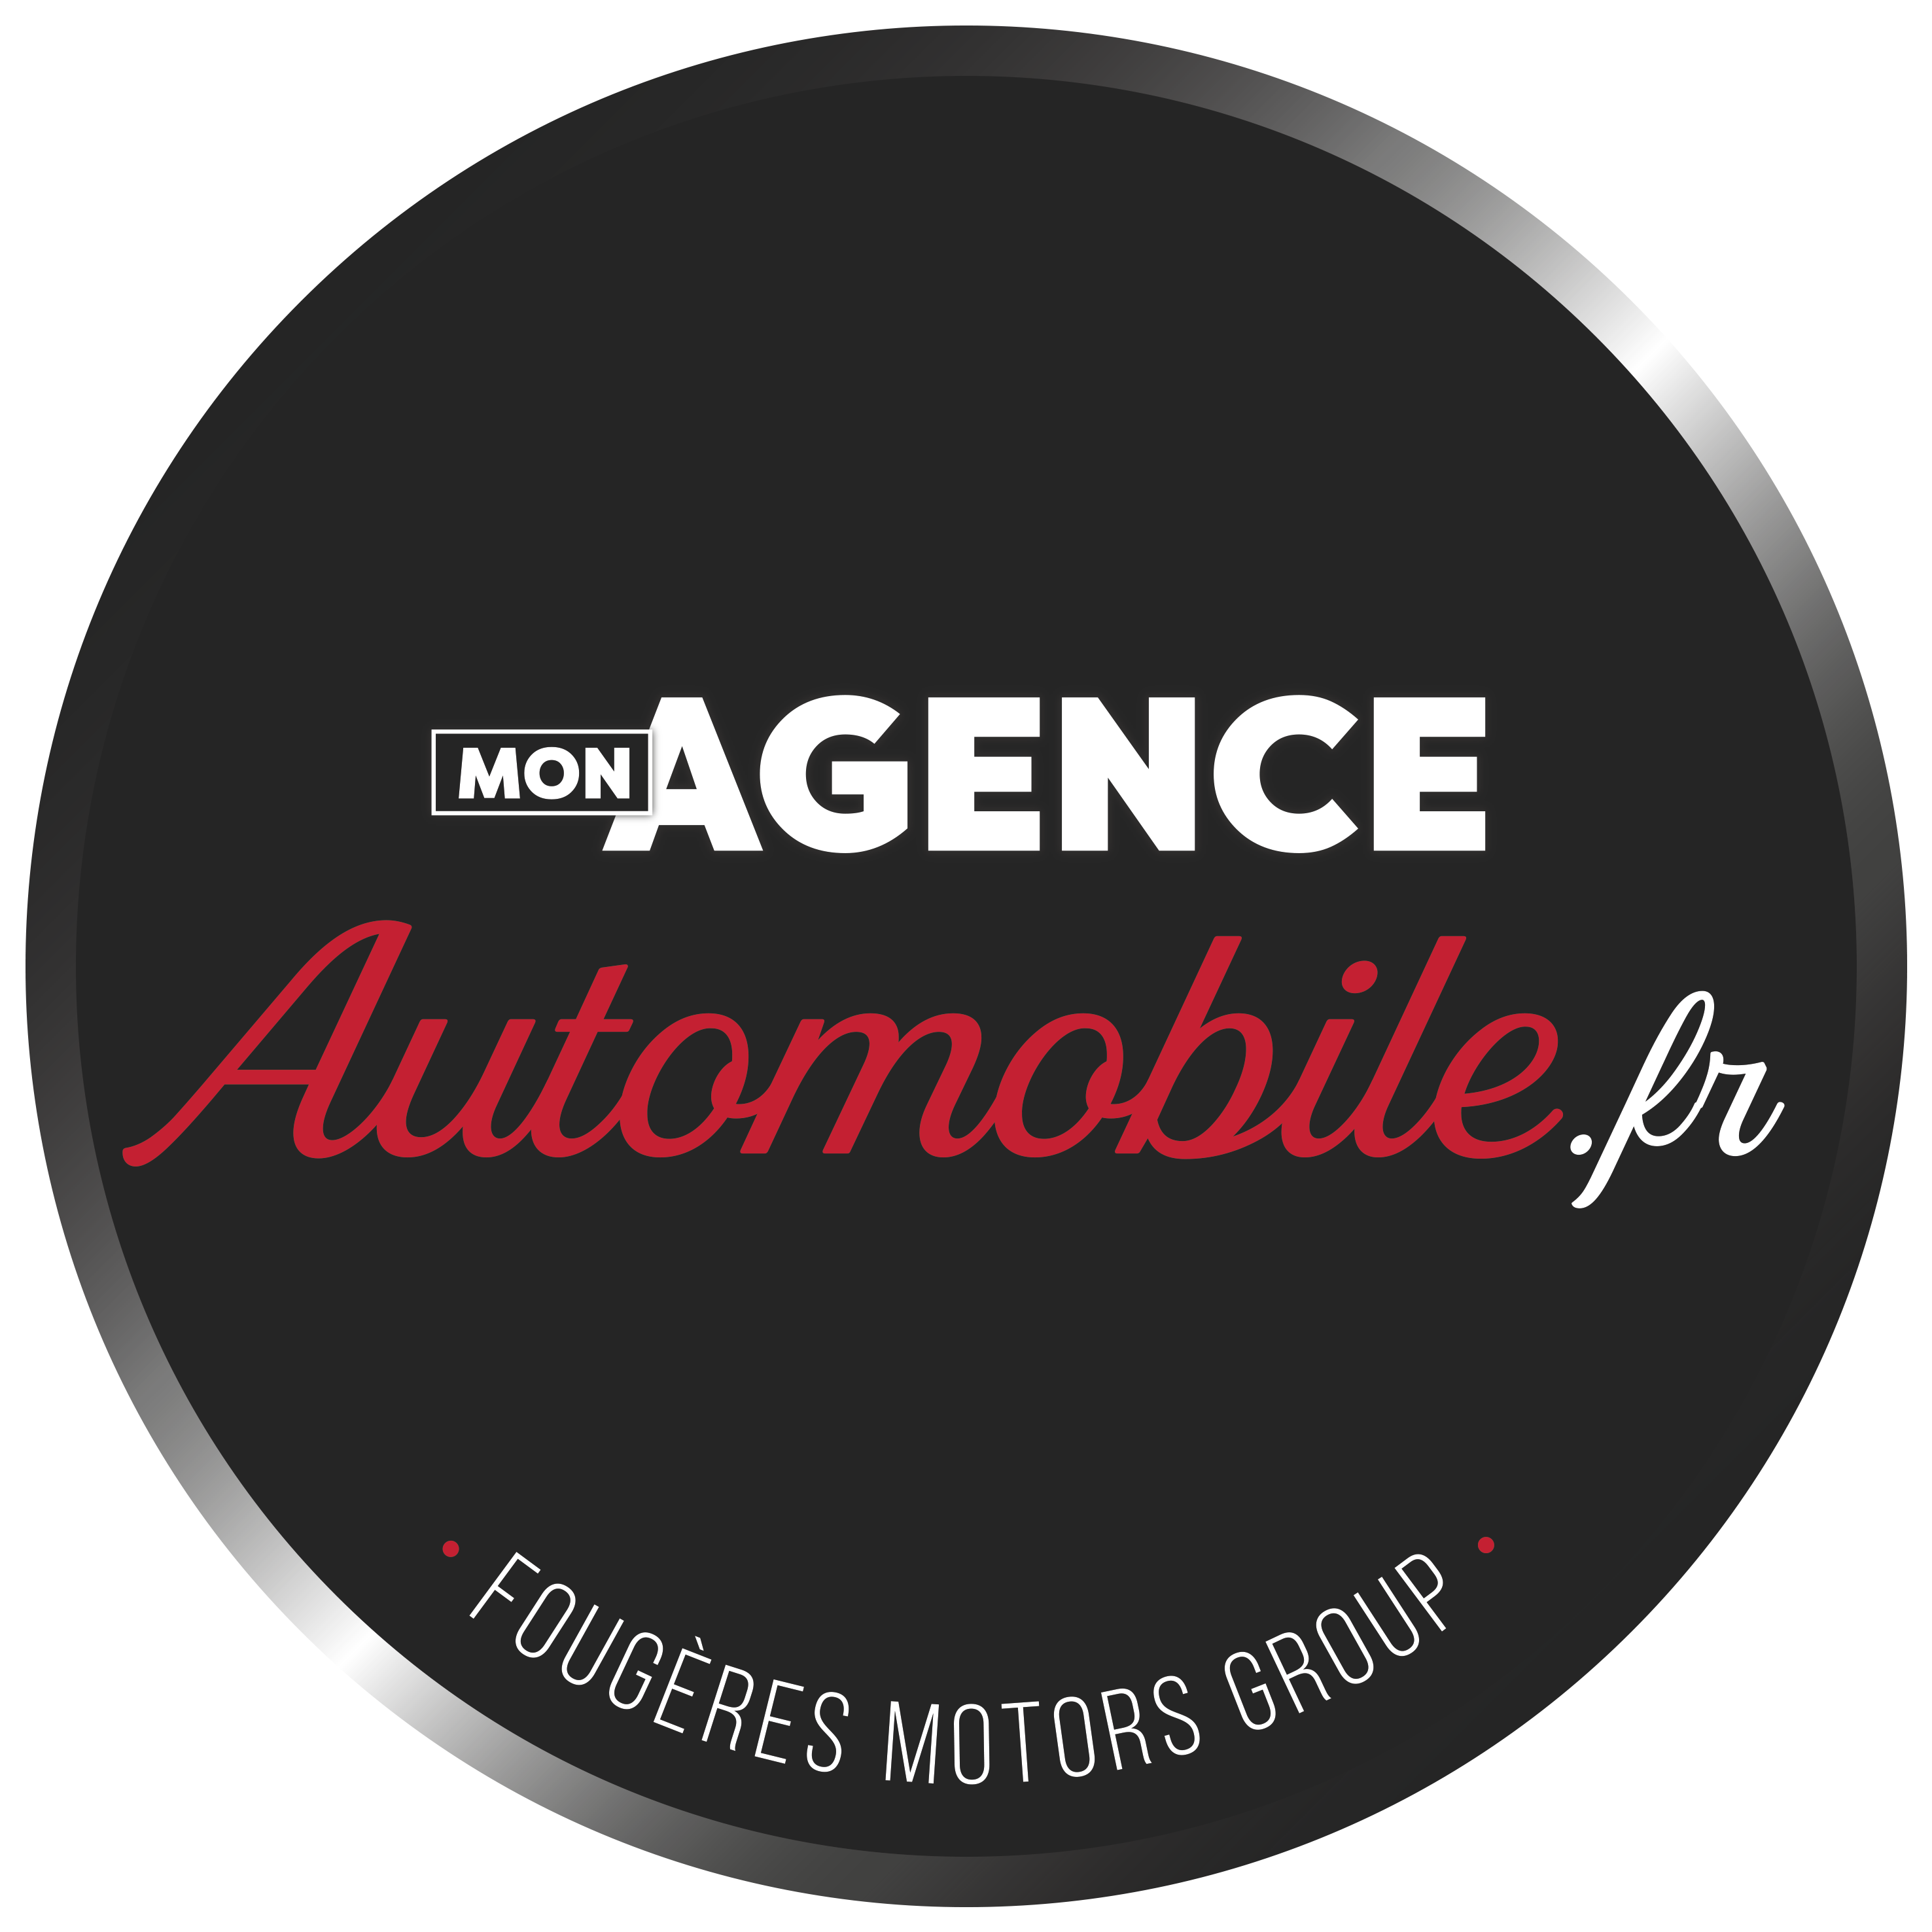 Le nouveau logo 2021 de Mon Agence Automobile.fr